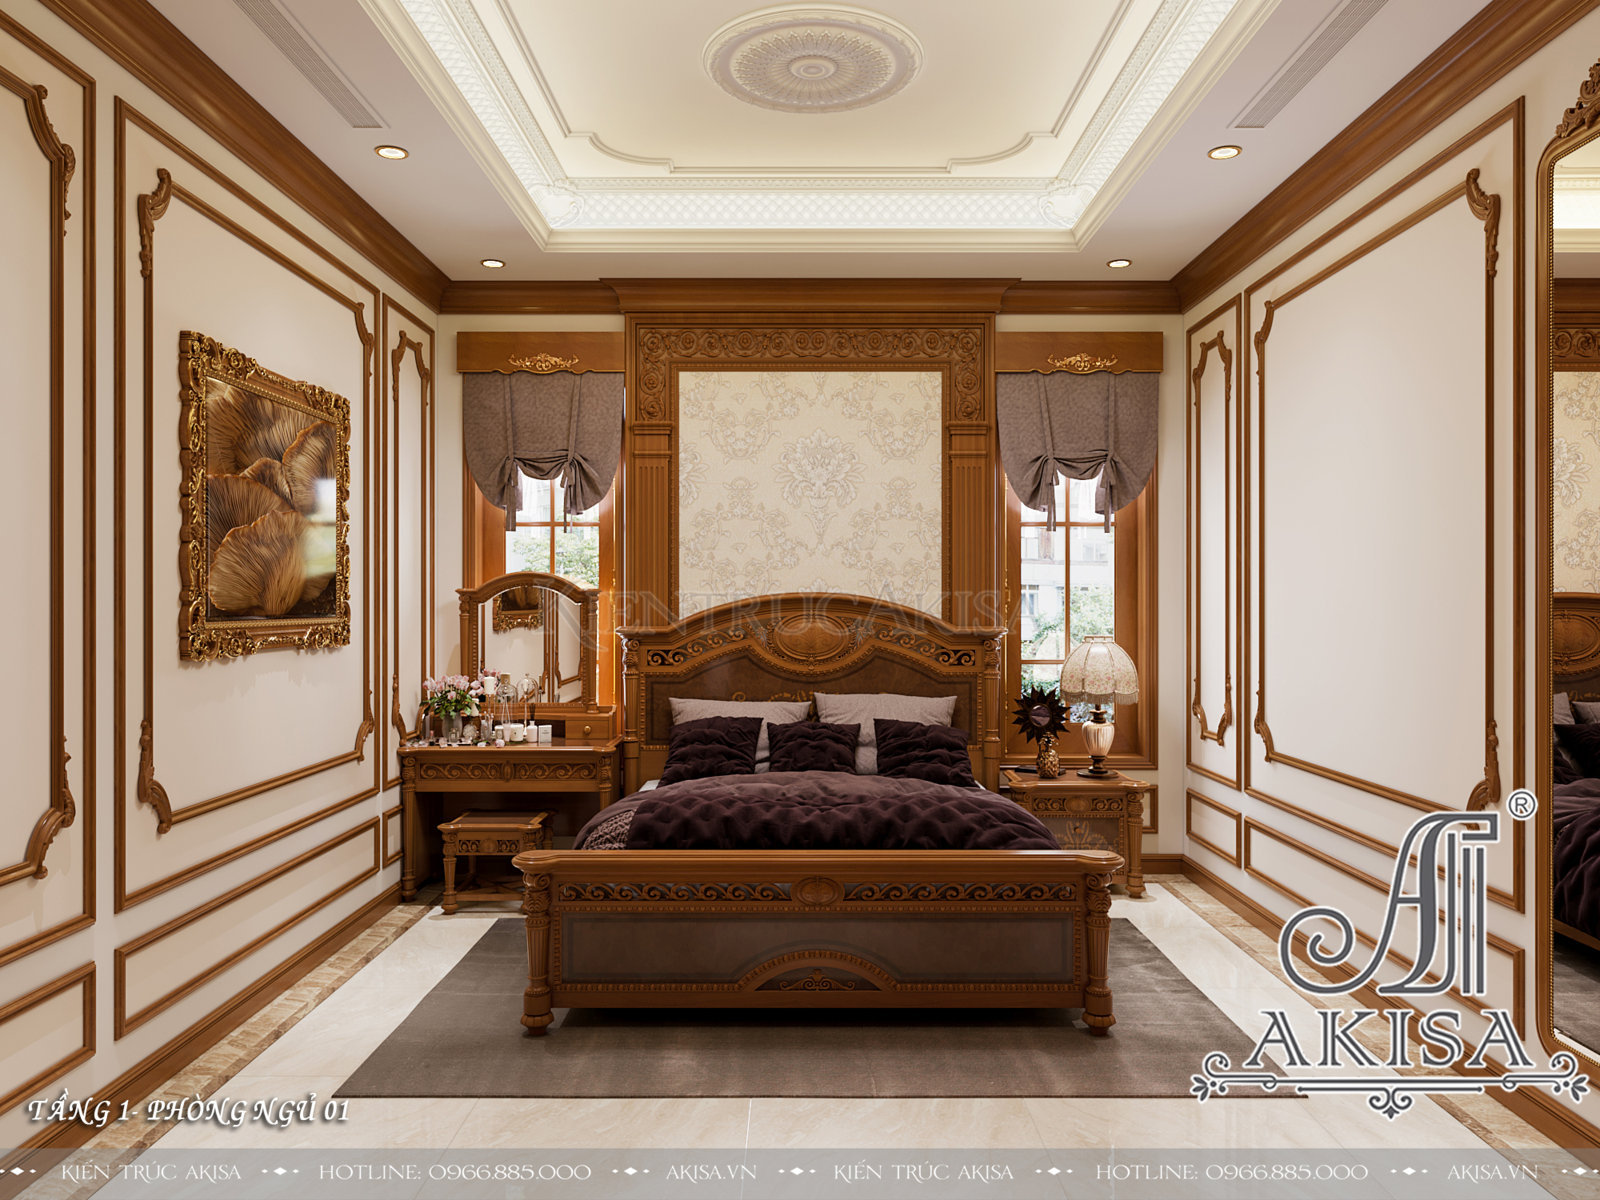 Mẫu nội thất gỗ hương phong cách tân cổ điển - Phòng ngủ 01